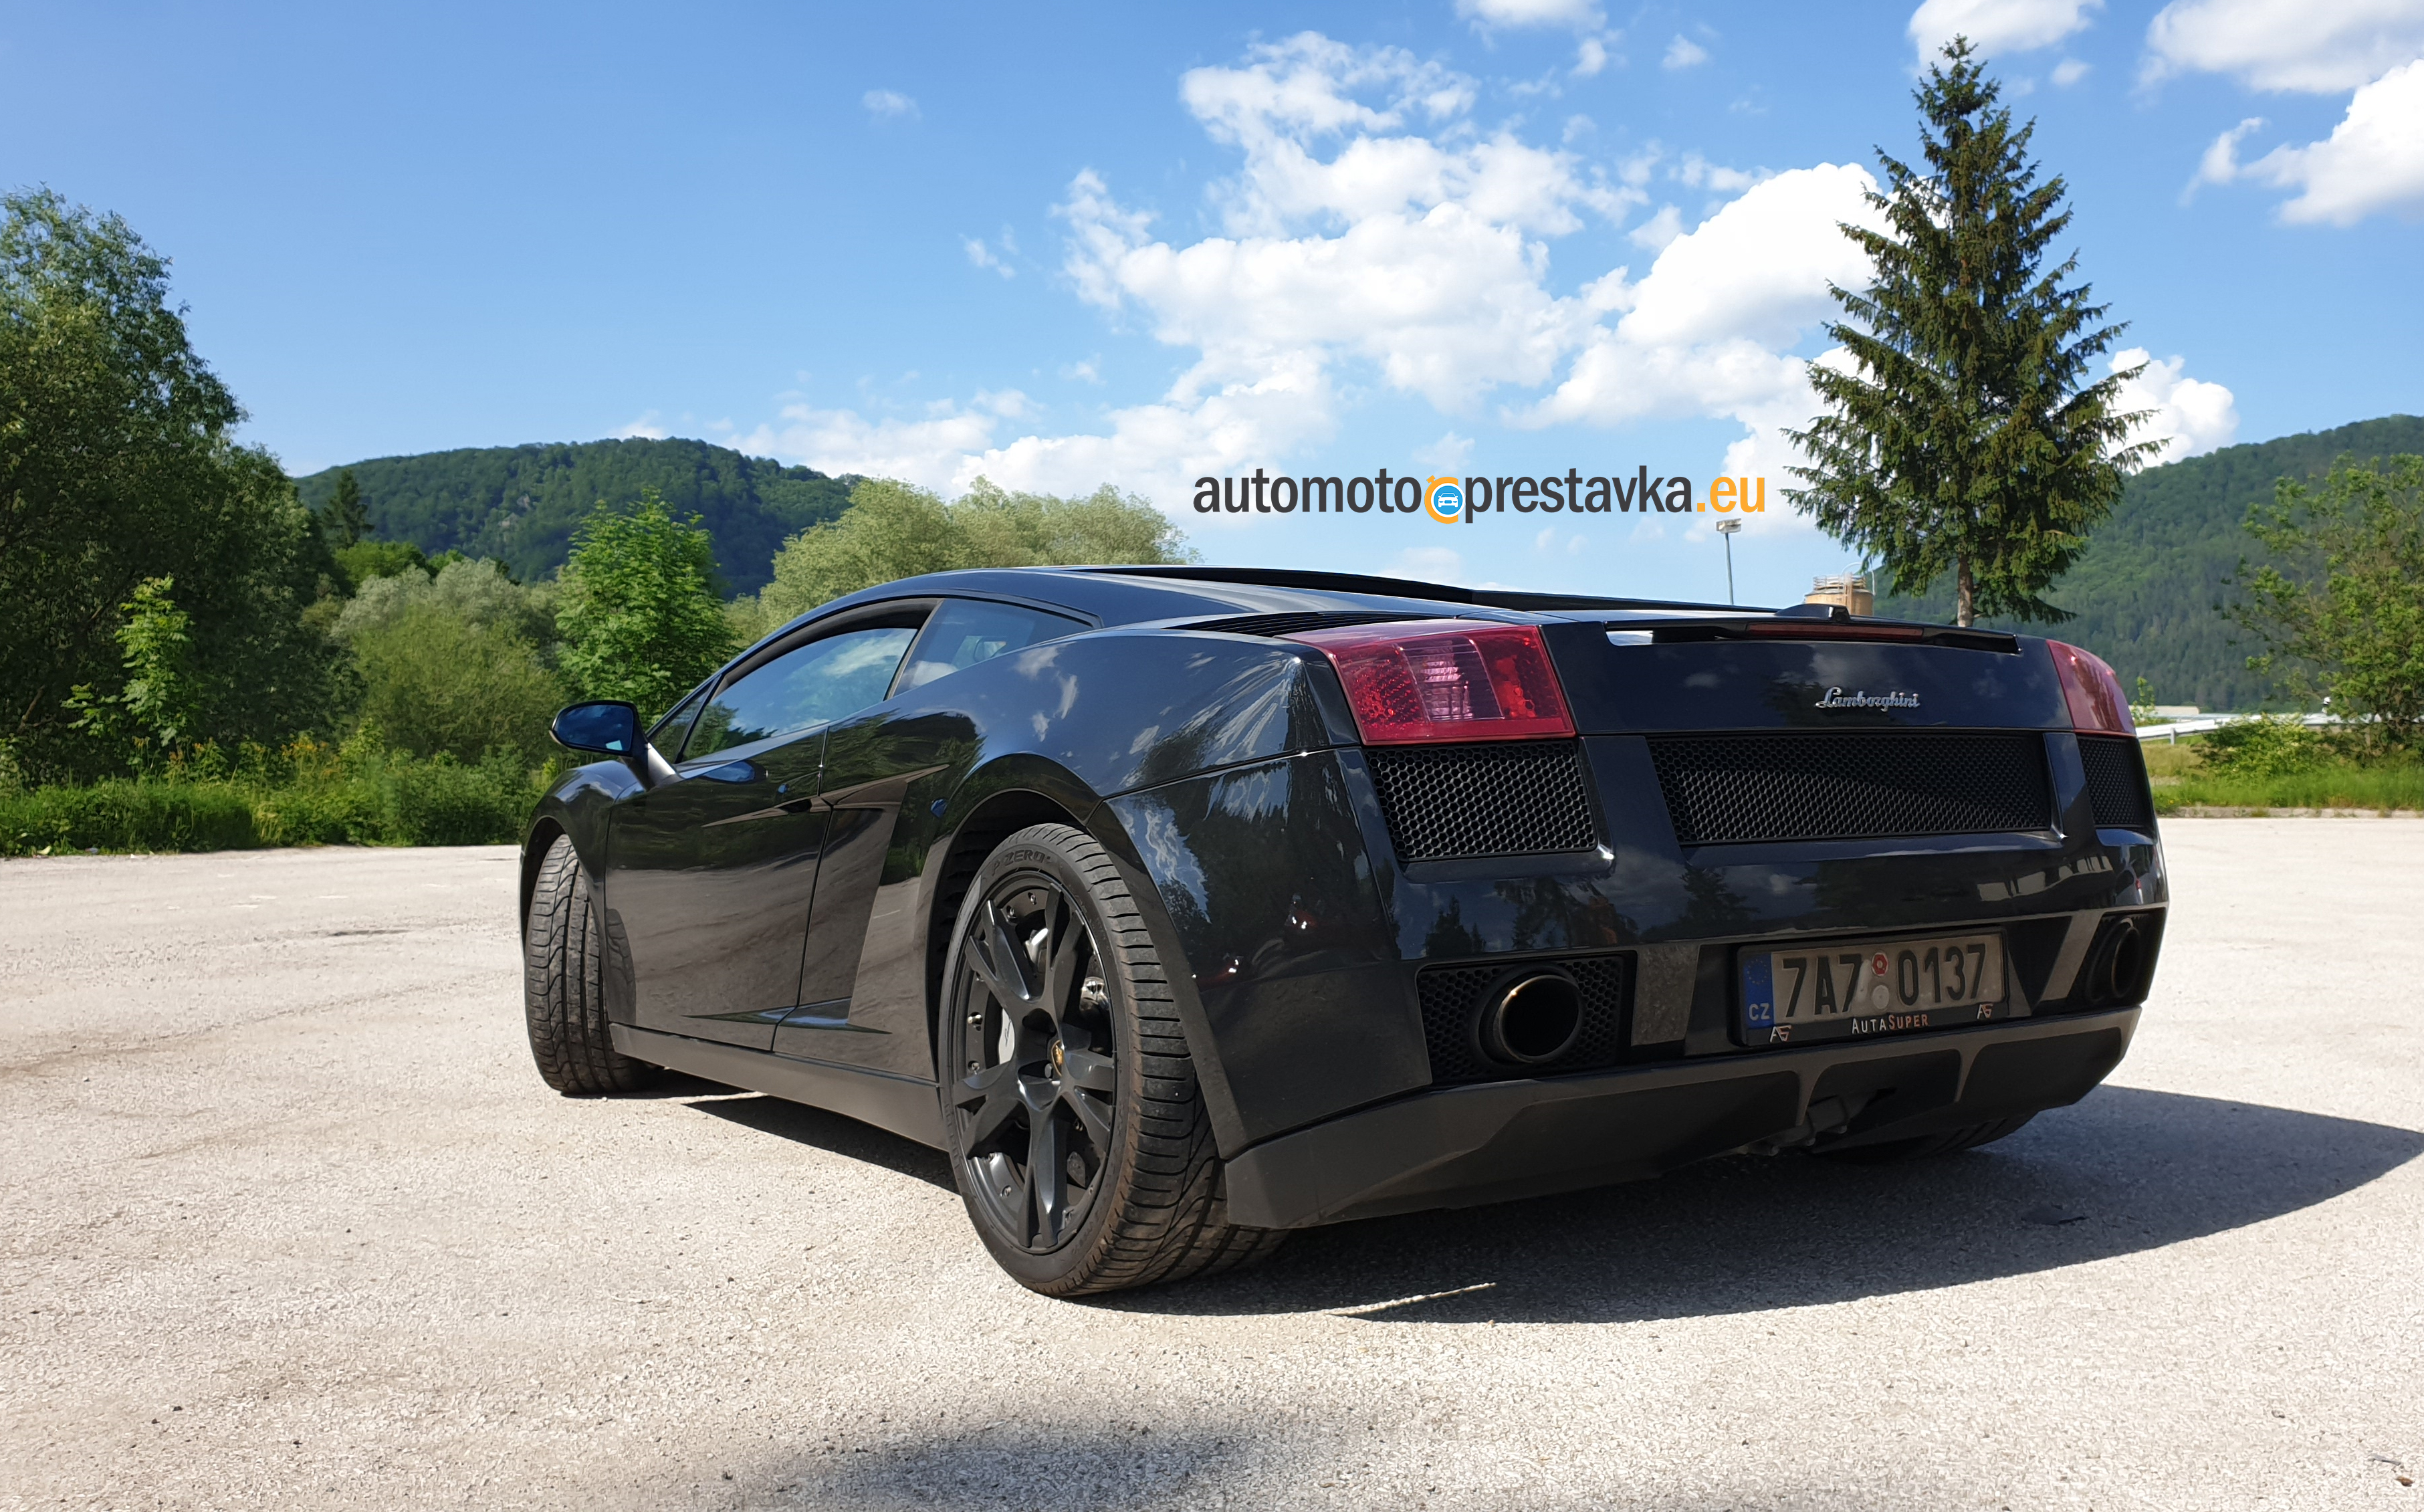 Test Lamborghini Gallardo Nera v čiernej farbe, pohľad na zadnú časť s ostrými hranami